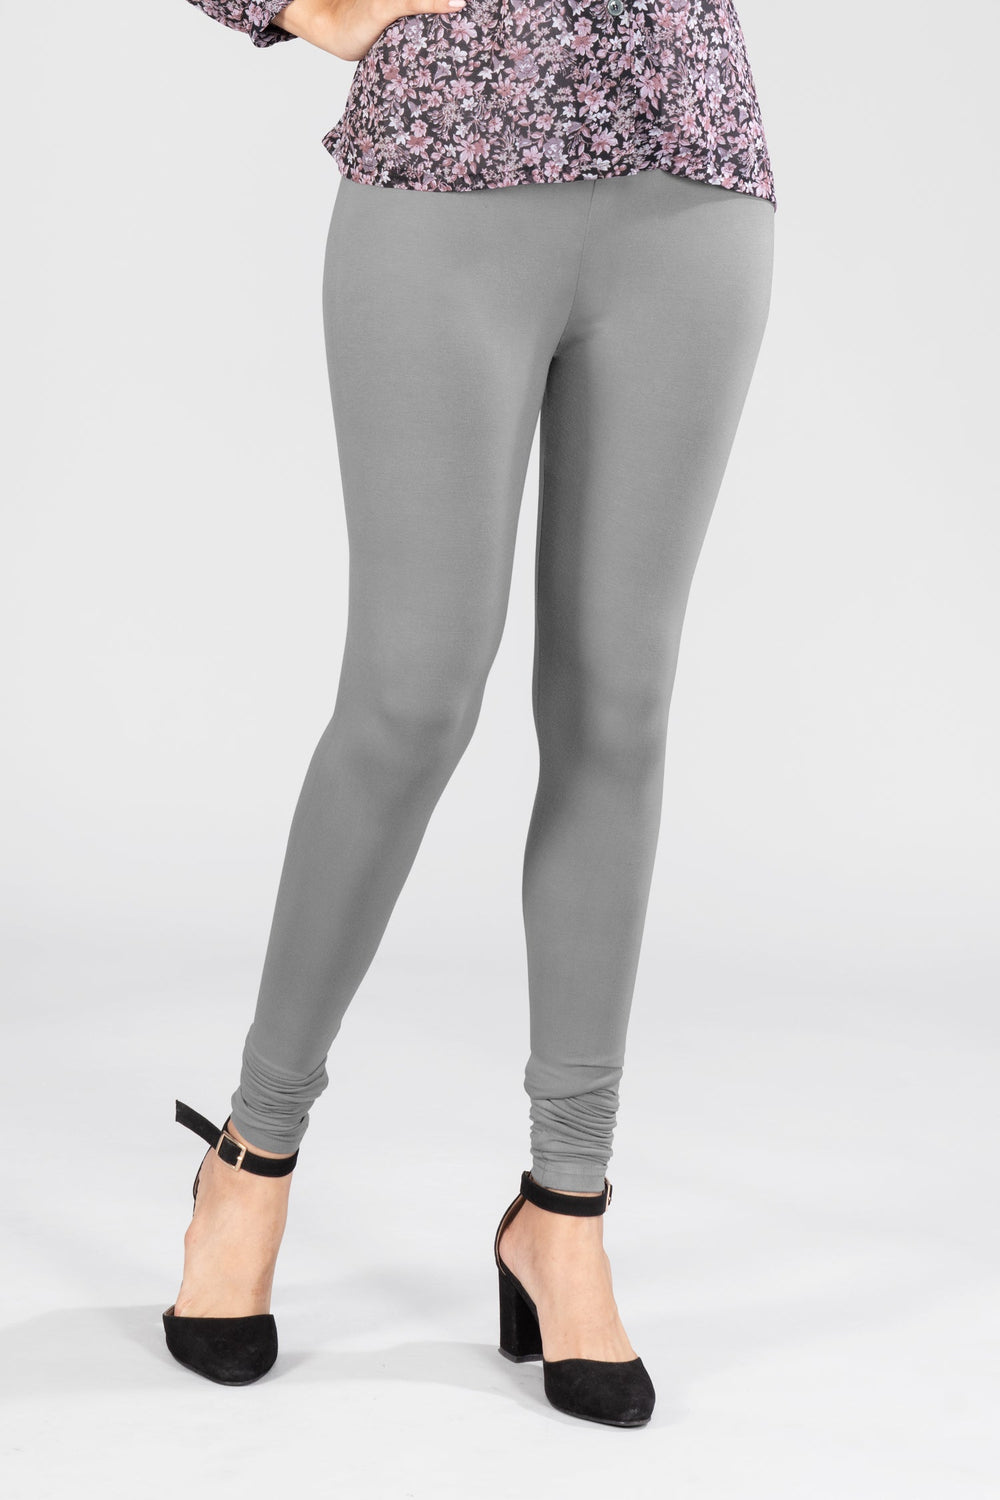 Elegant Grey Viscose Full Length Leggings